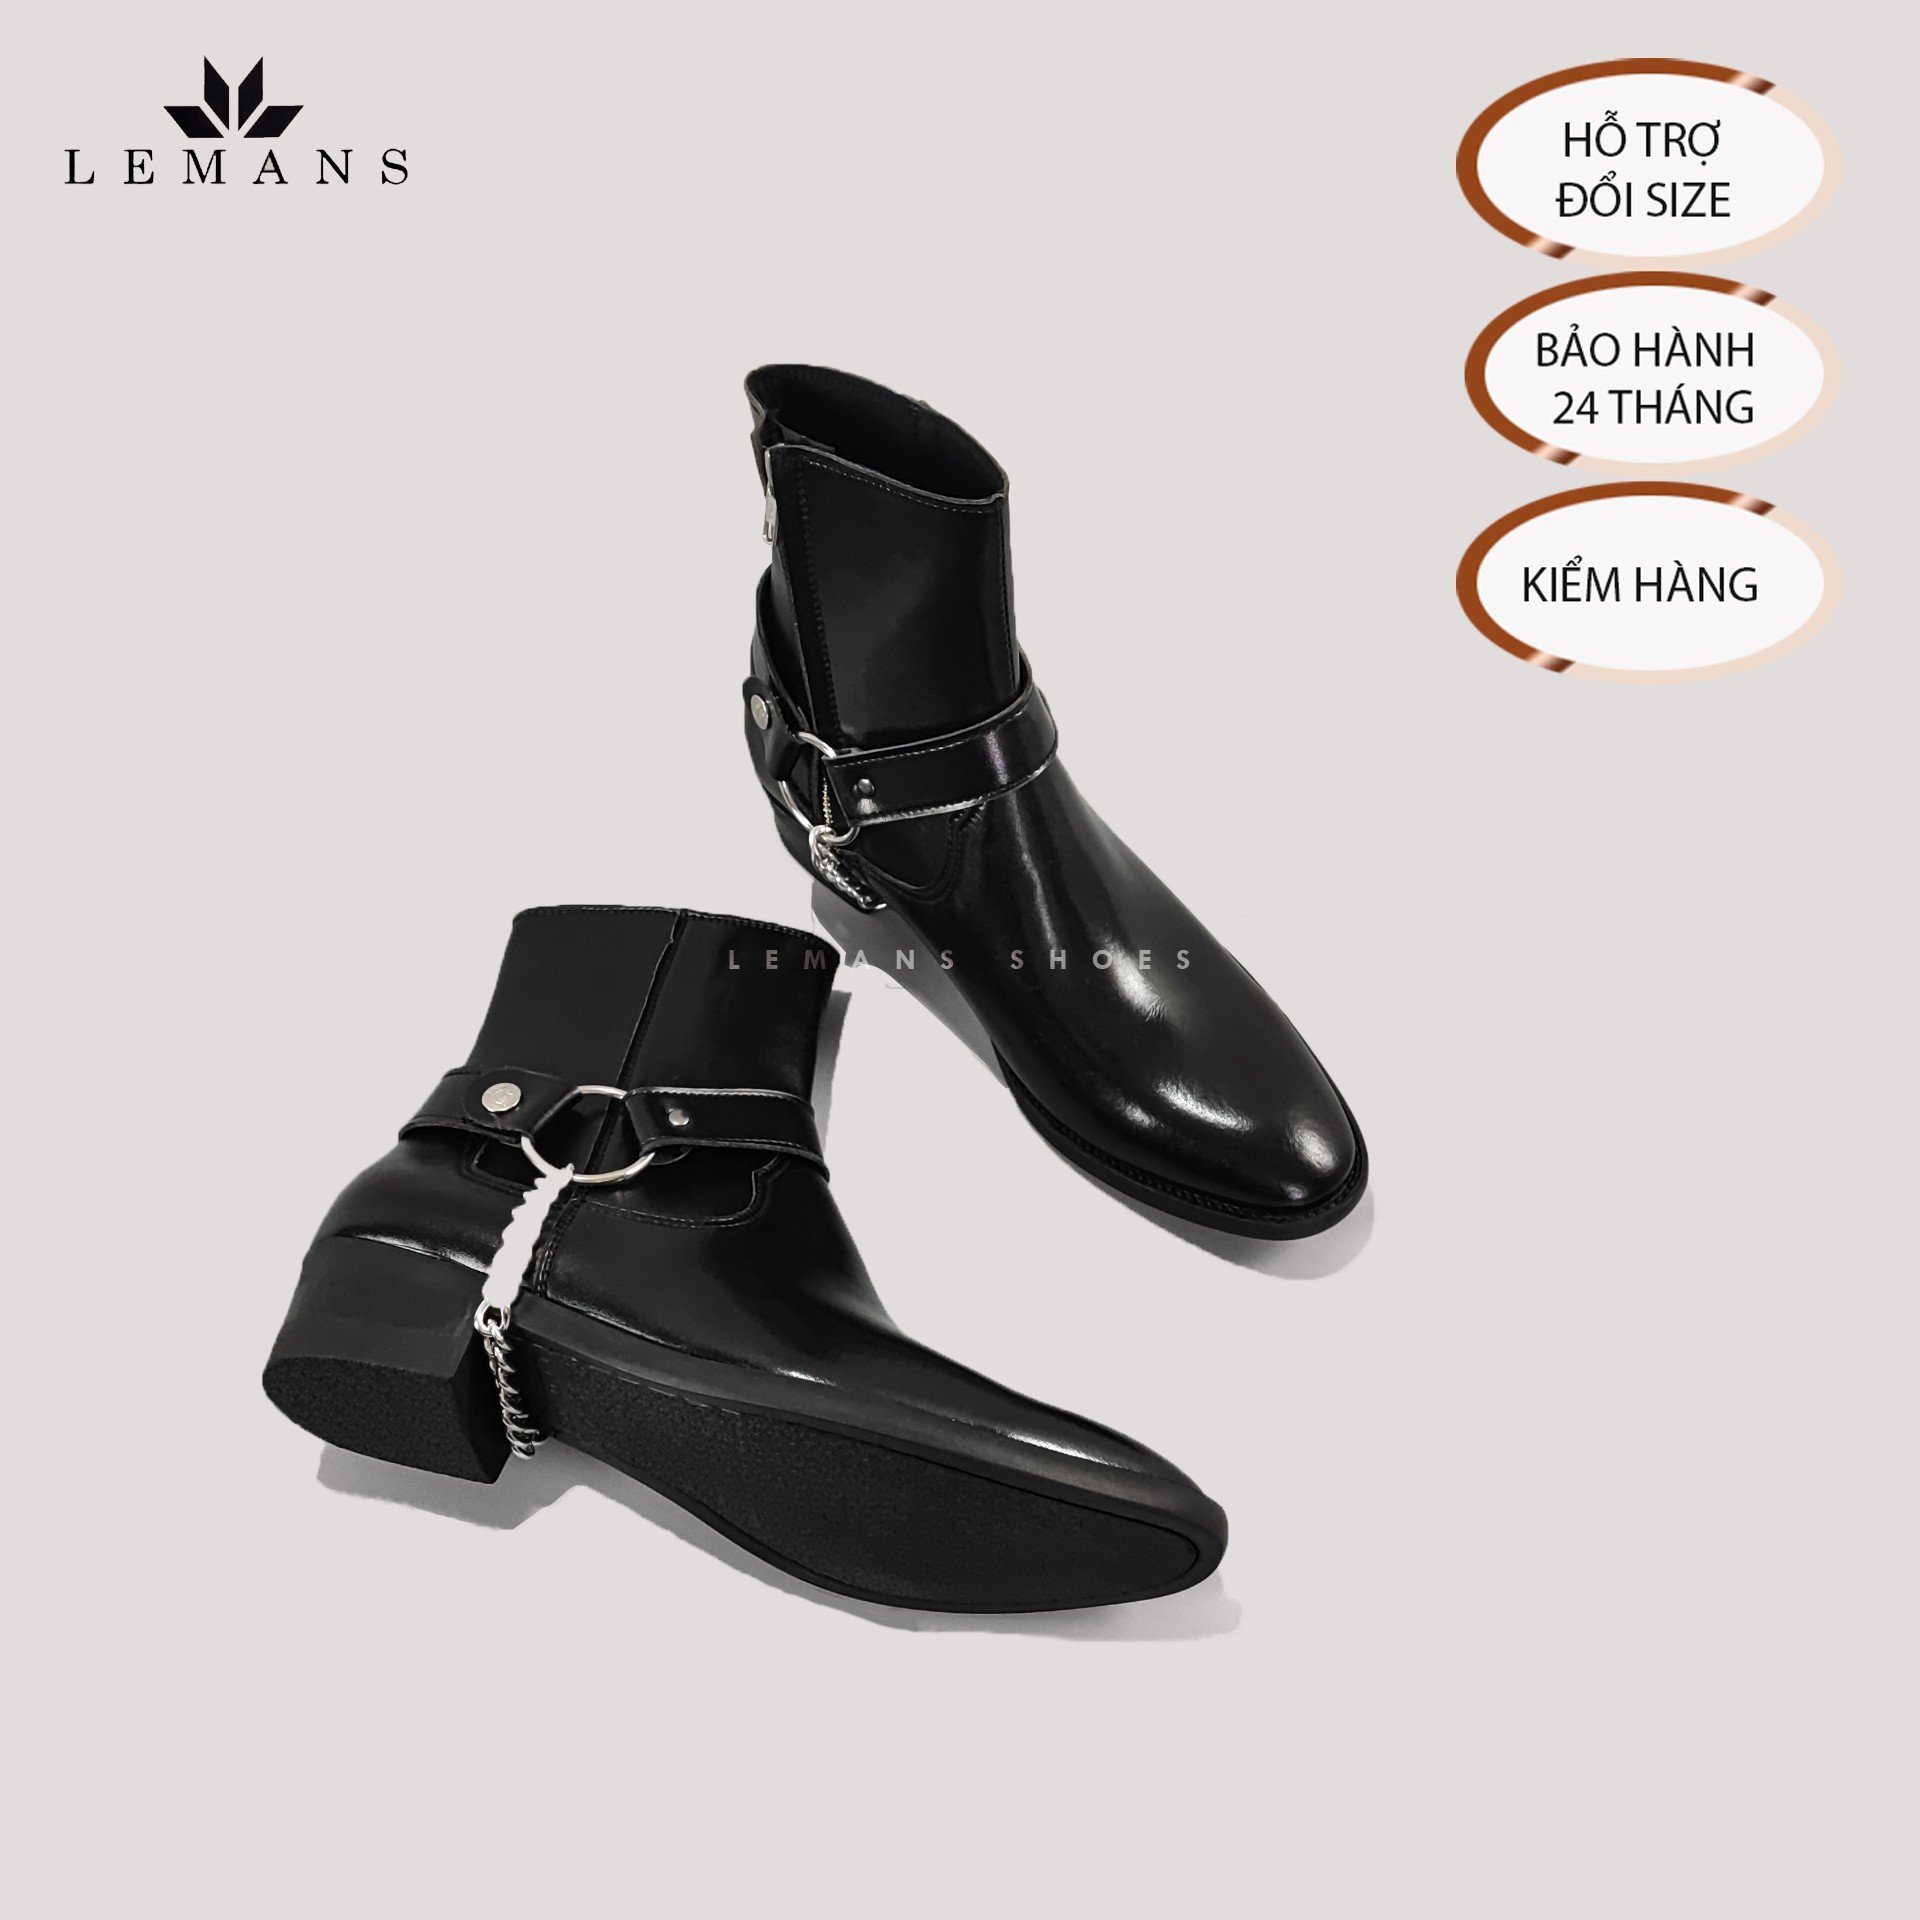 [MUA 1 = 4 BOOTS] Giày da bò Zip (Harness) Boots Black LeMans ZB01B, phối đai xích tạo thành 3 đôi Harness, bảo hành 24 tháng